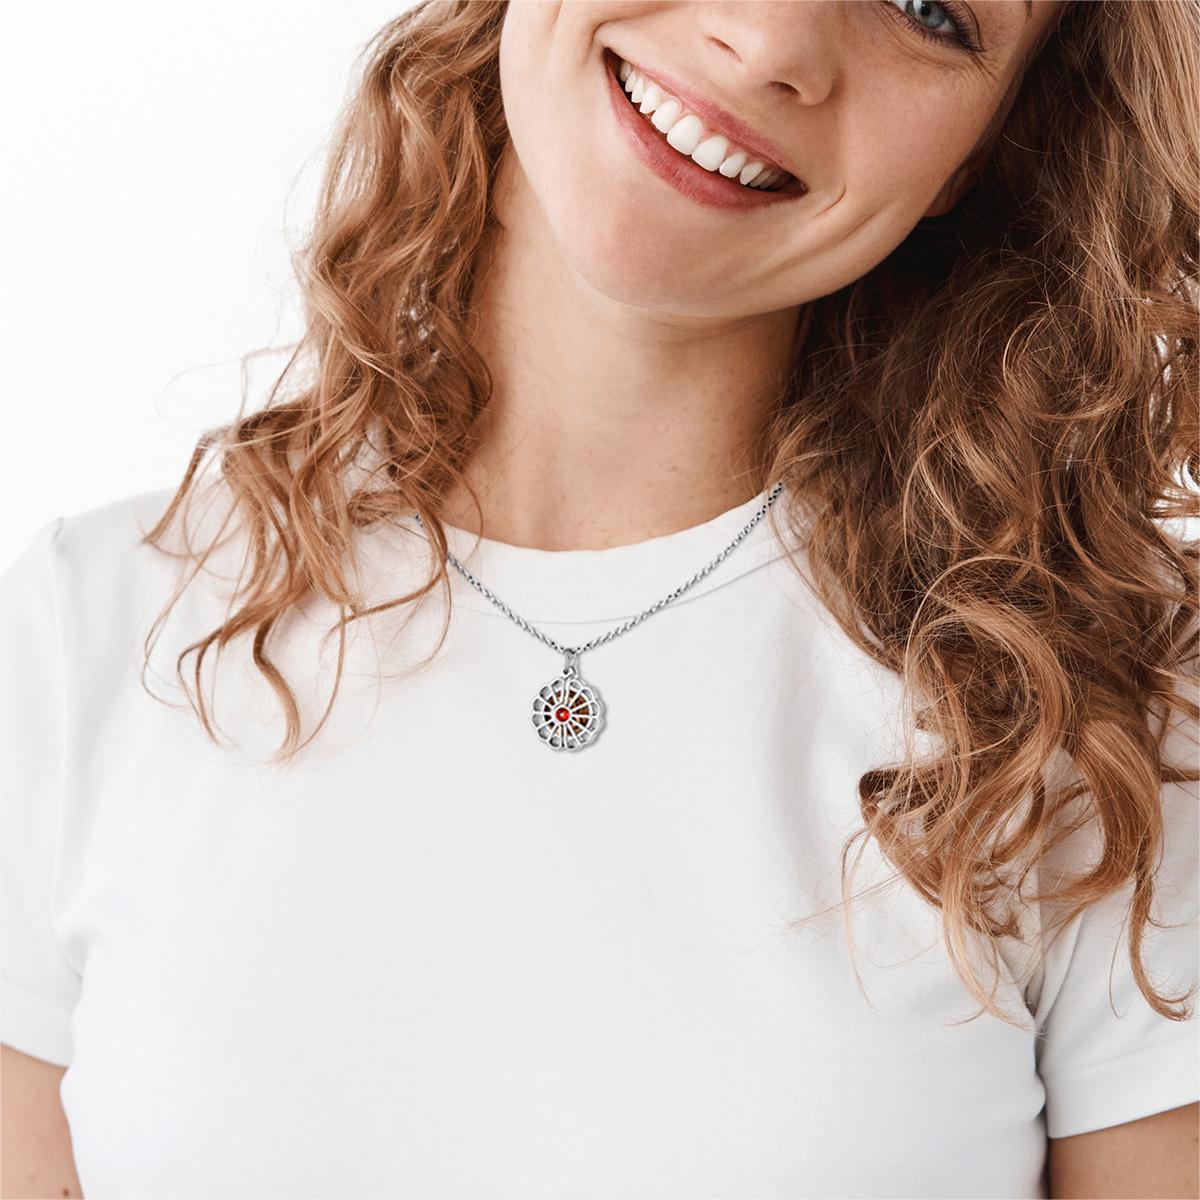 Birthstonesjewelry Locket Necklace for Women